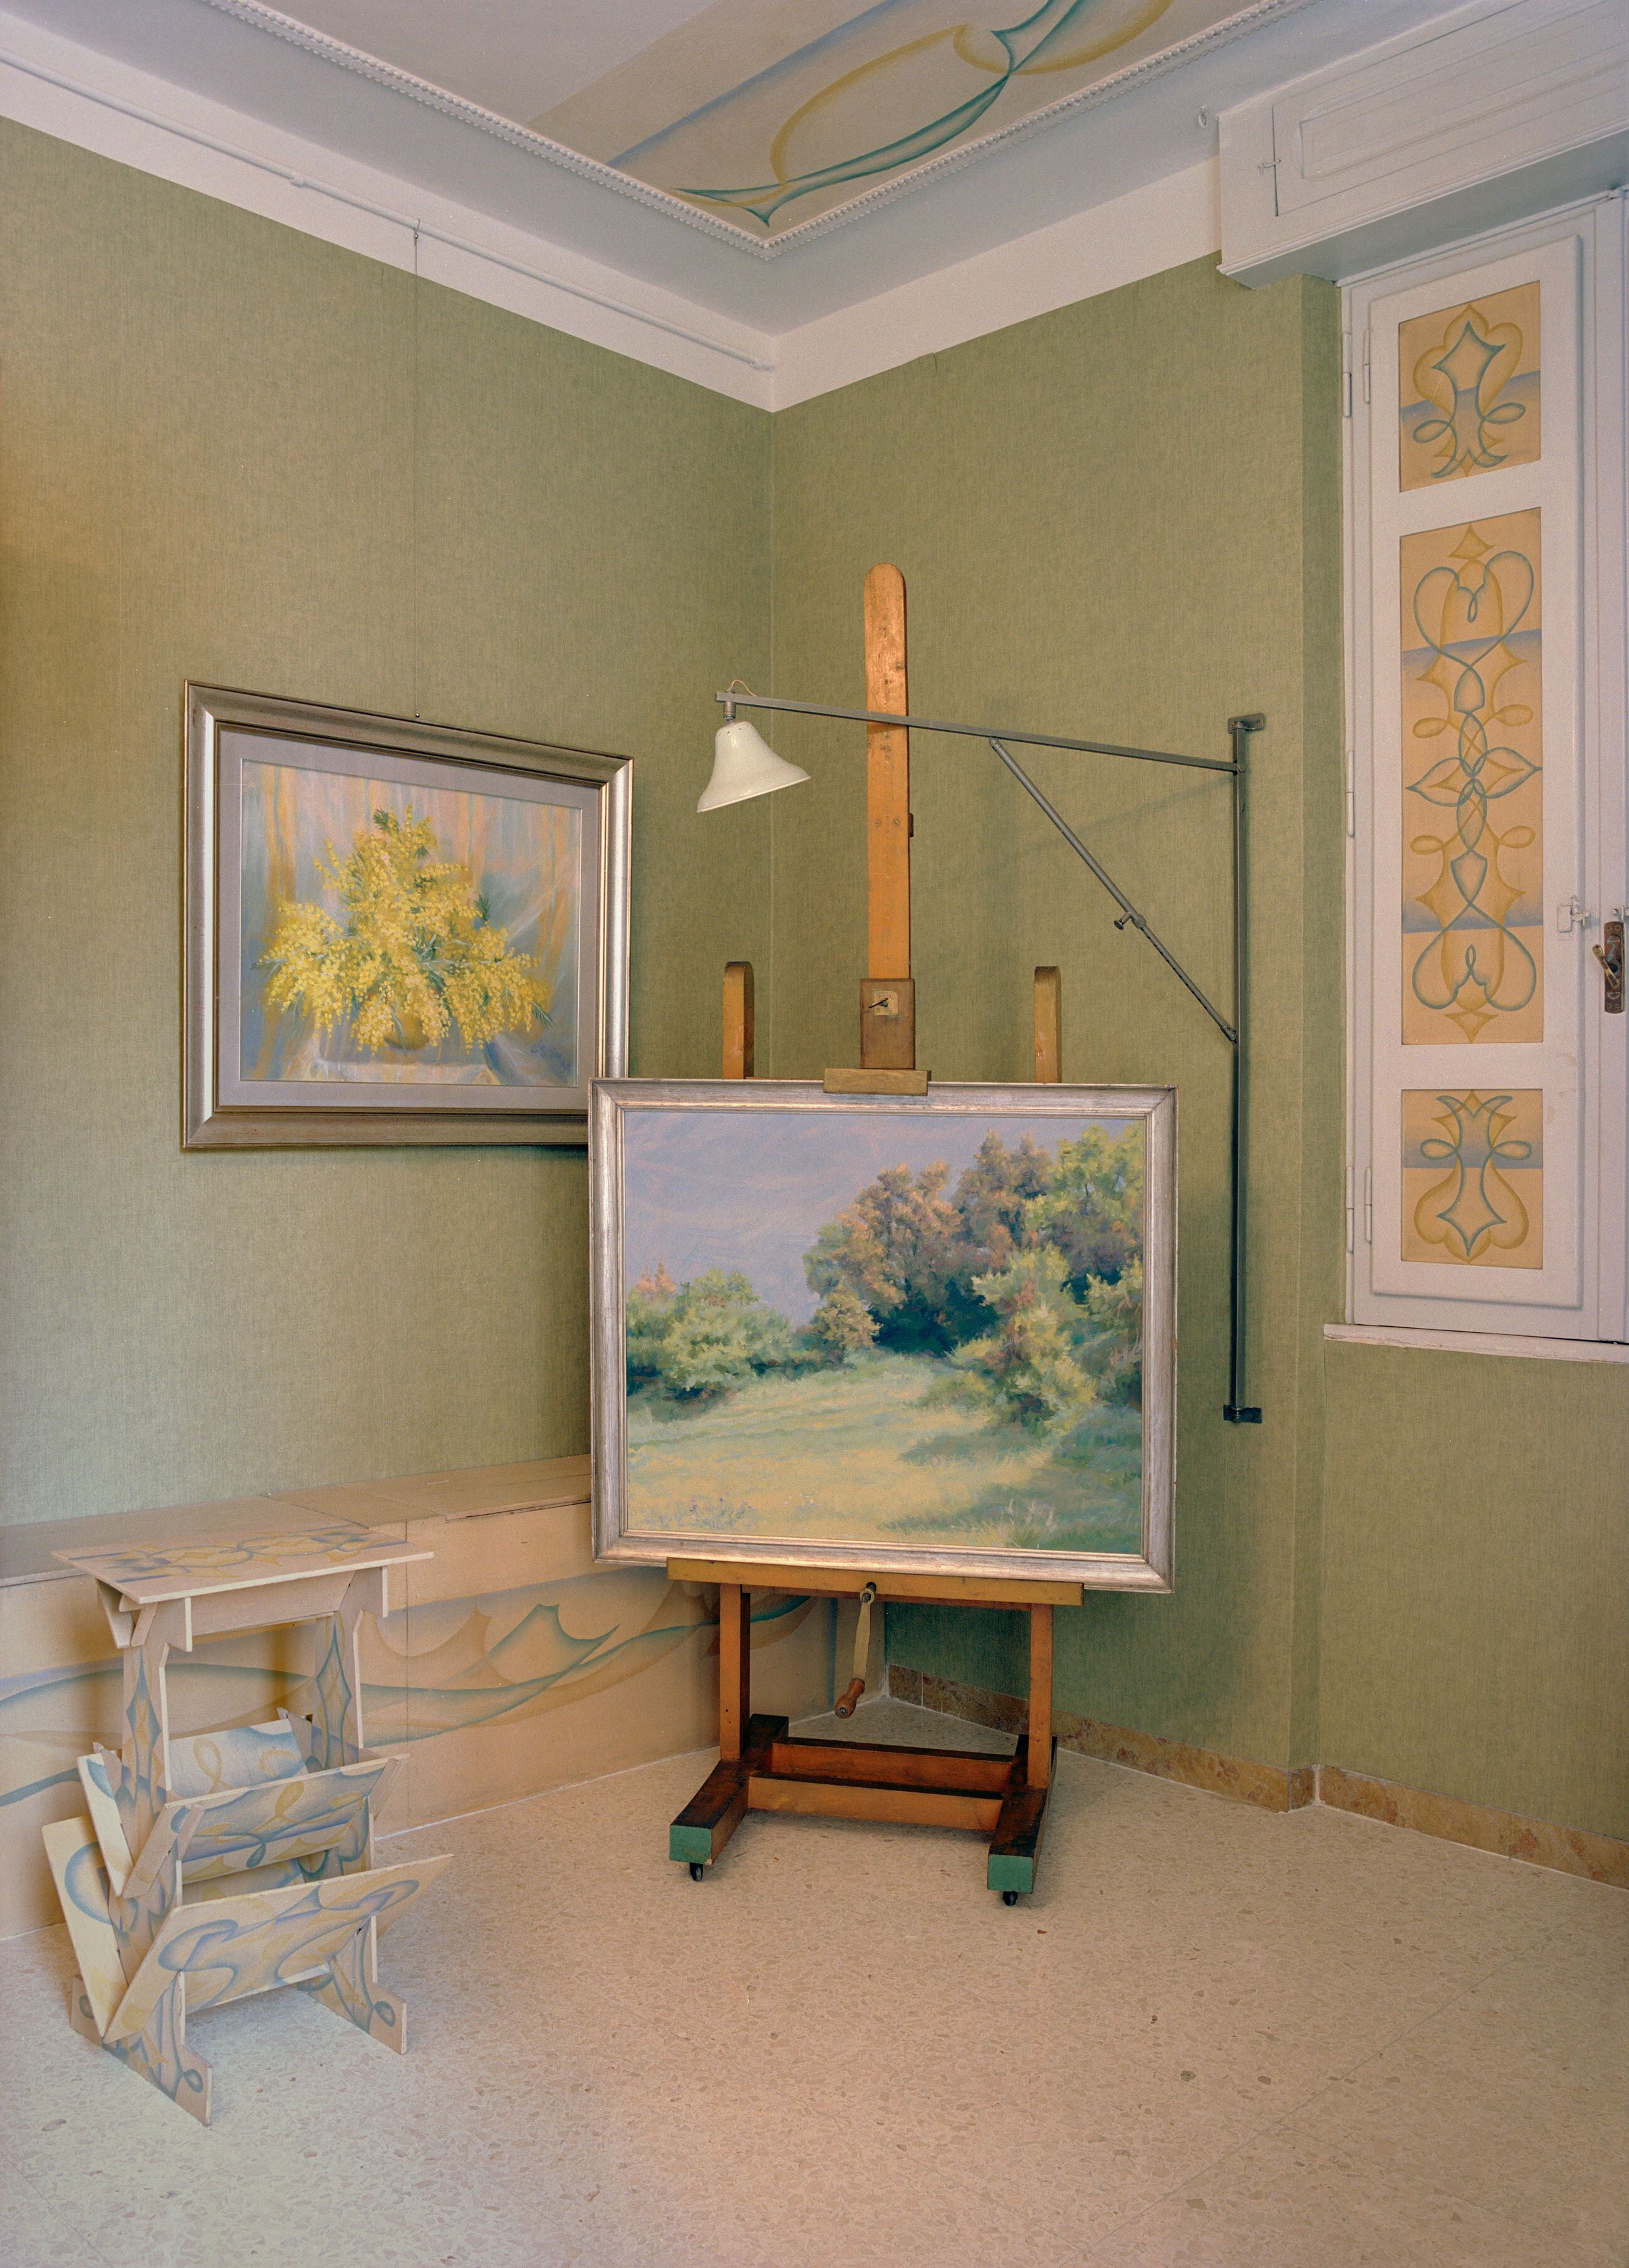 Una de las habitaciones de sus hijas con cuadros pintados por ellas.